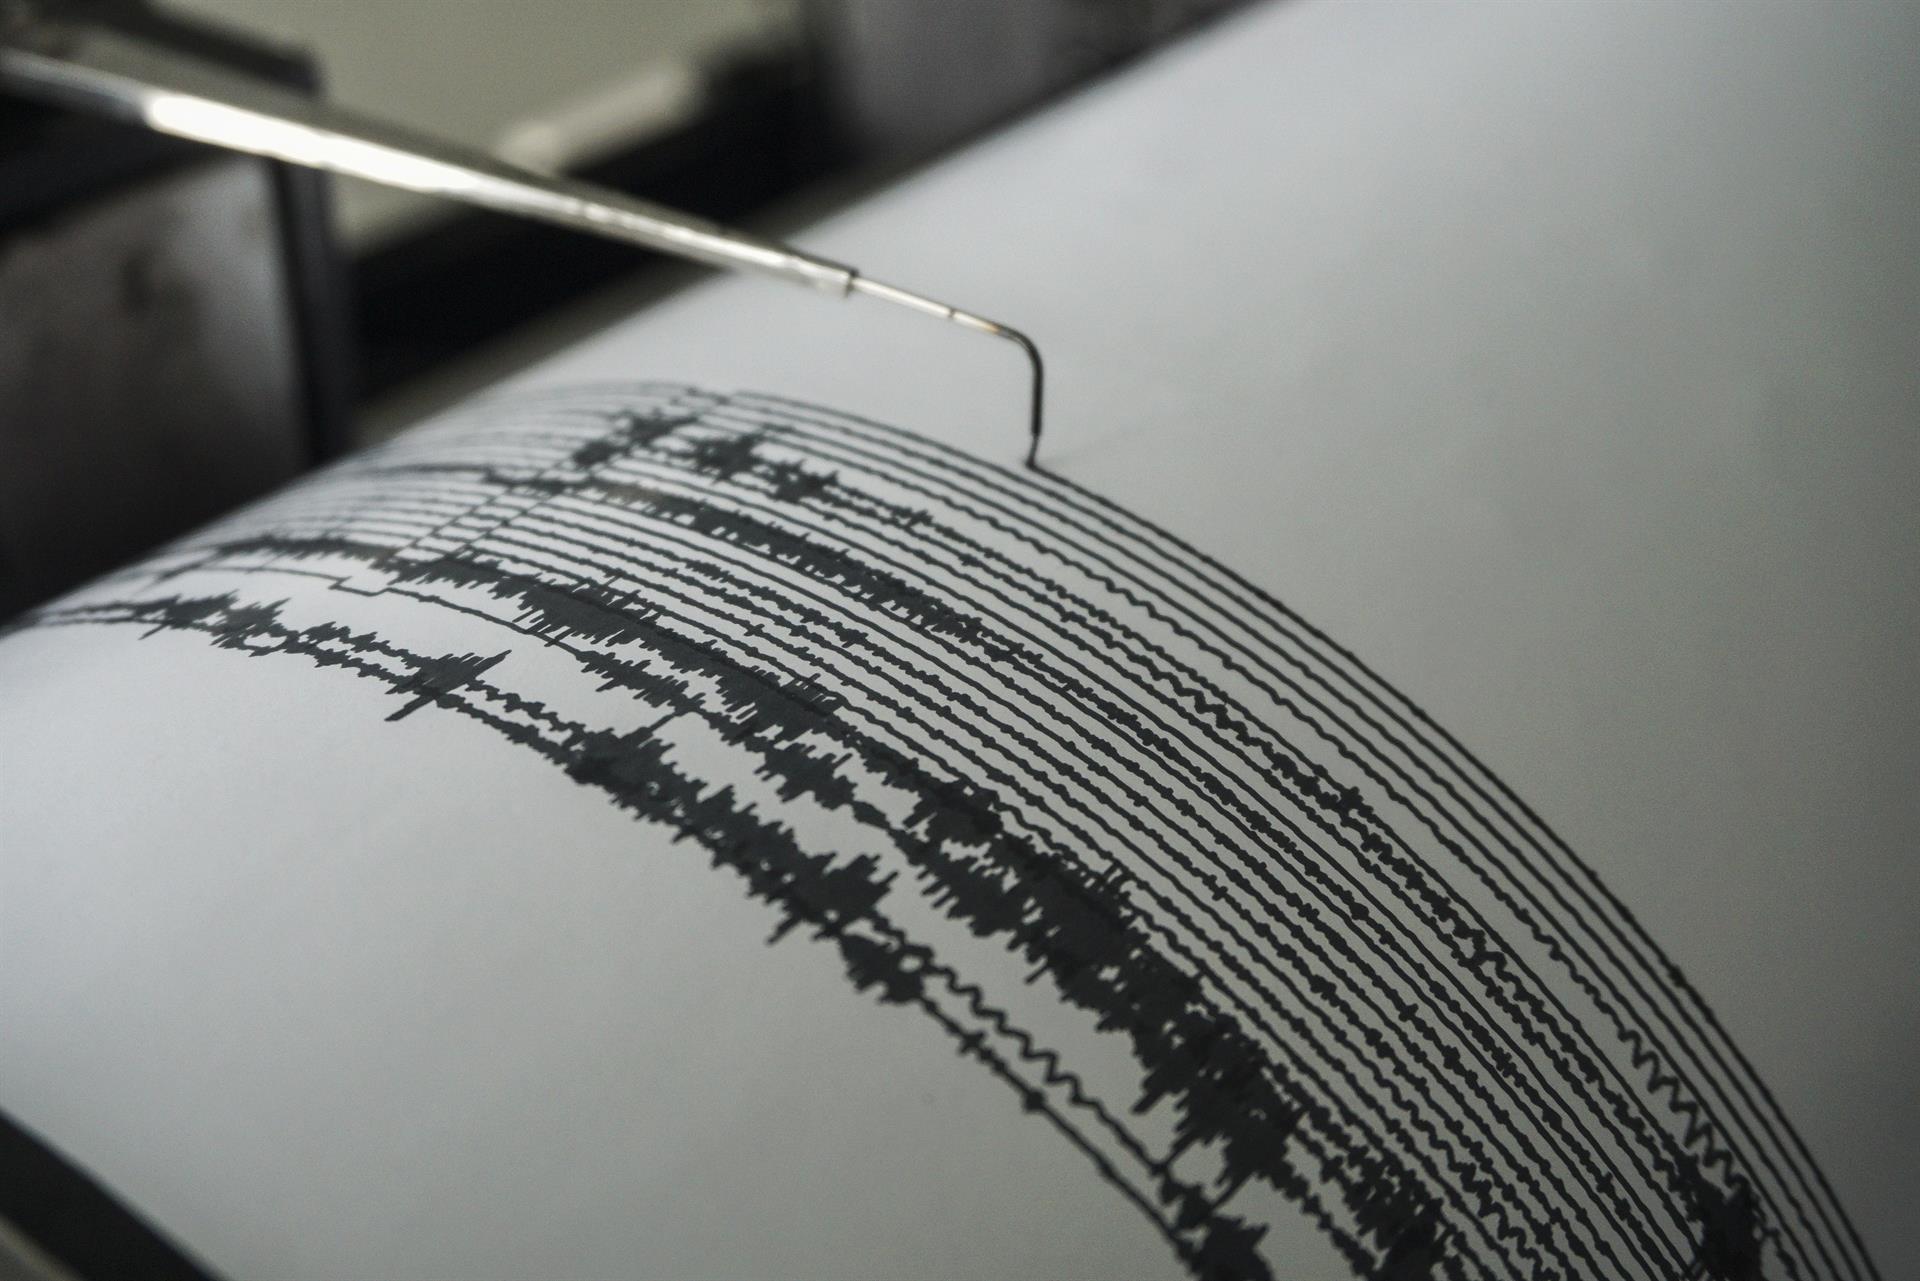 Sismo de magnitud 3.5 sacudió los hogares de los merideños este #30Abr